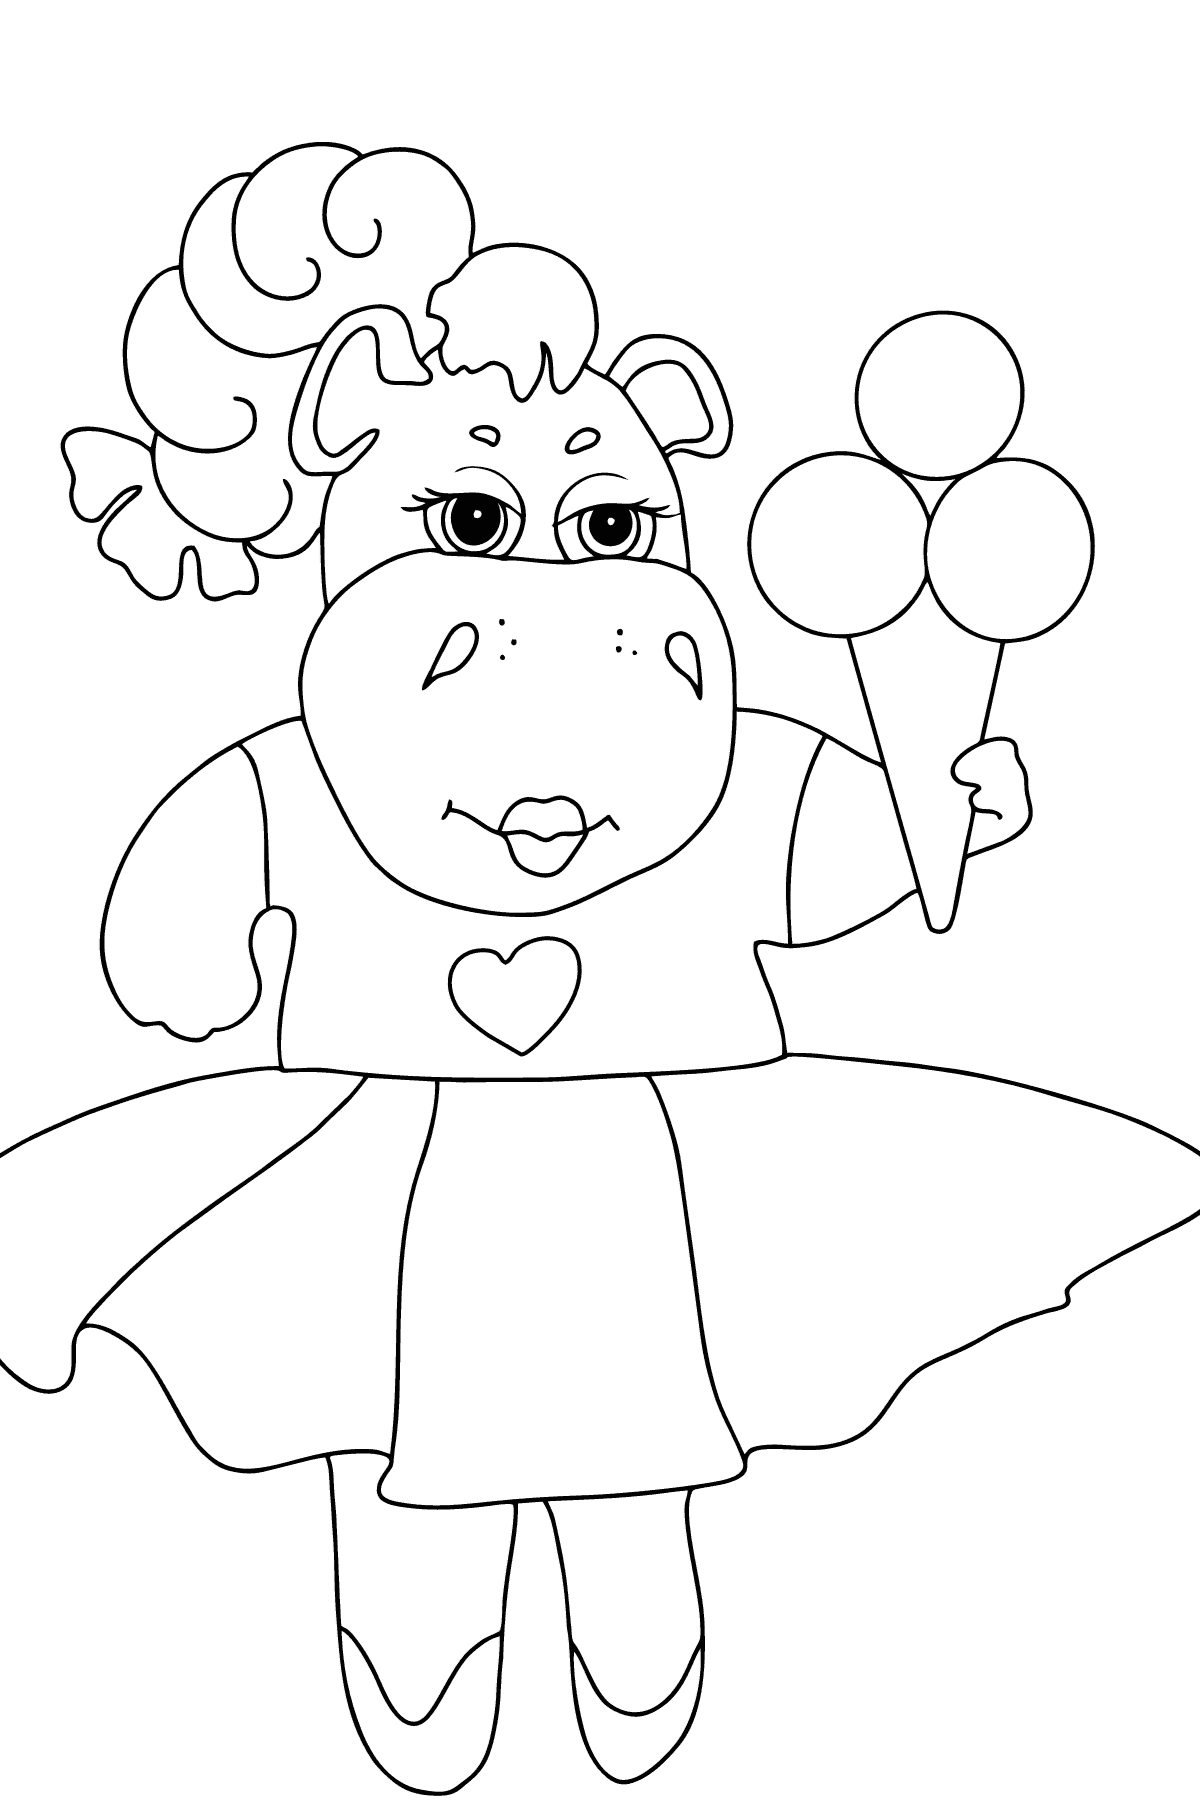 Dibujo de Adorable hipopótamo para colorear - Dibujos para Colorear para Niños